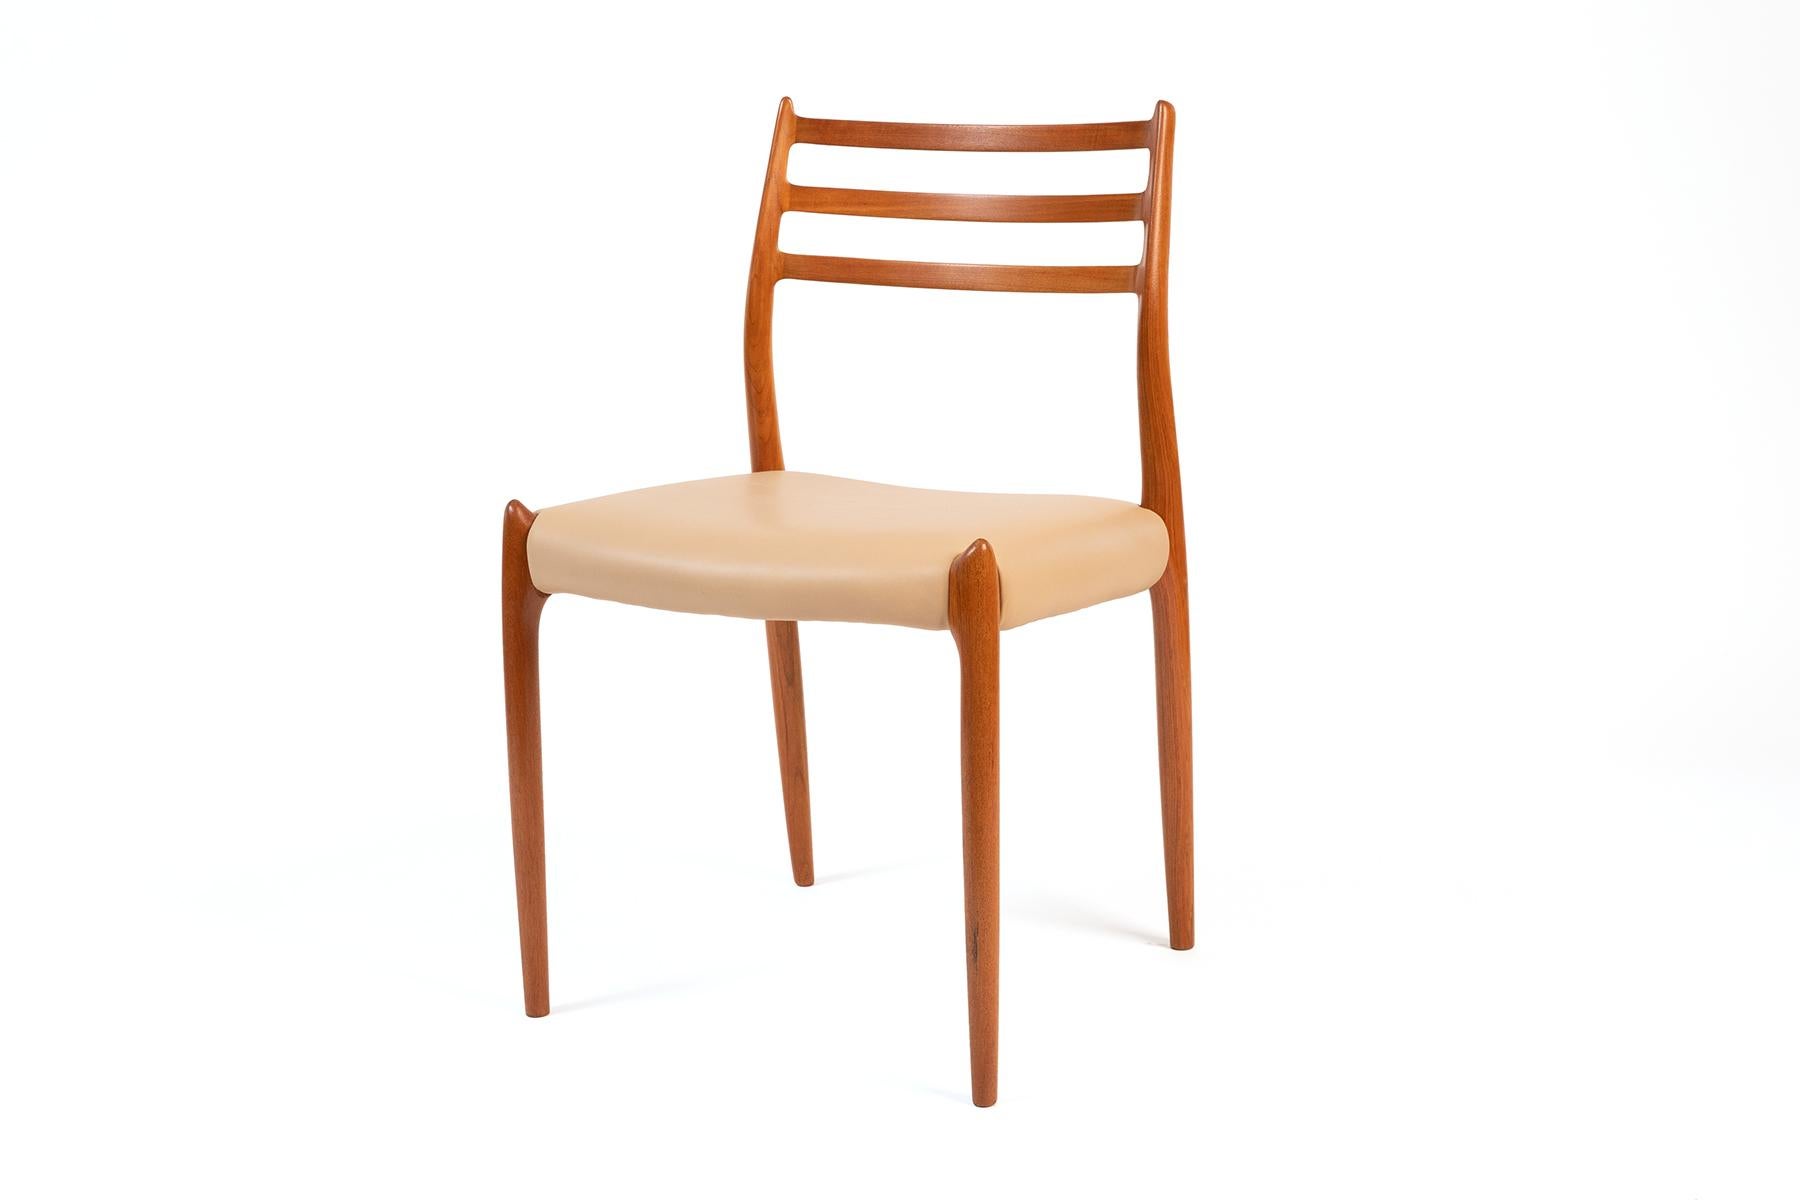 Ensemble de quatre chaises de salle à manger par Niels Otto Moller pour I.L.A. Moller, Danemark, vers le milieu des années 1960. Modèle 78. Un ensemble élégant de chaises en teck avec des sièges en cuir et des dossiers en échelle sculptés. Finition